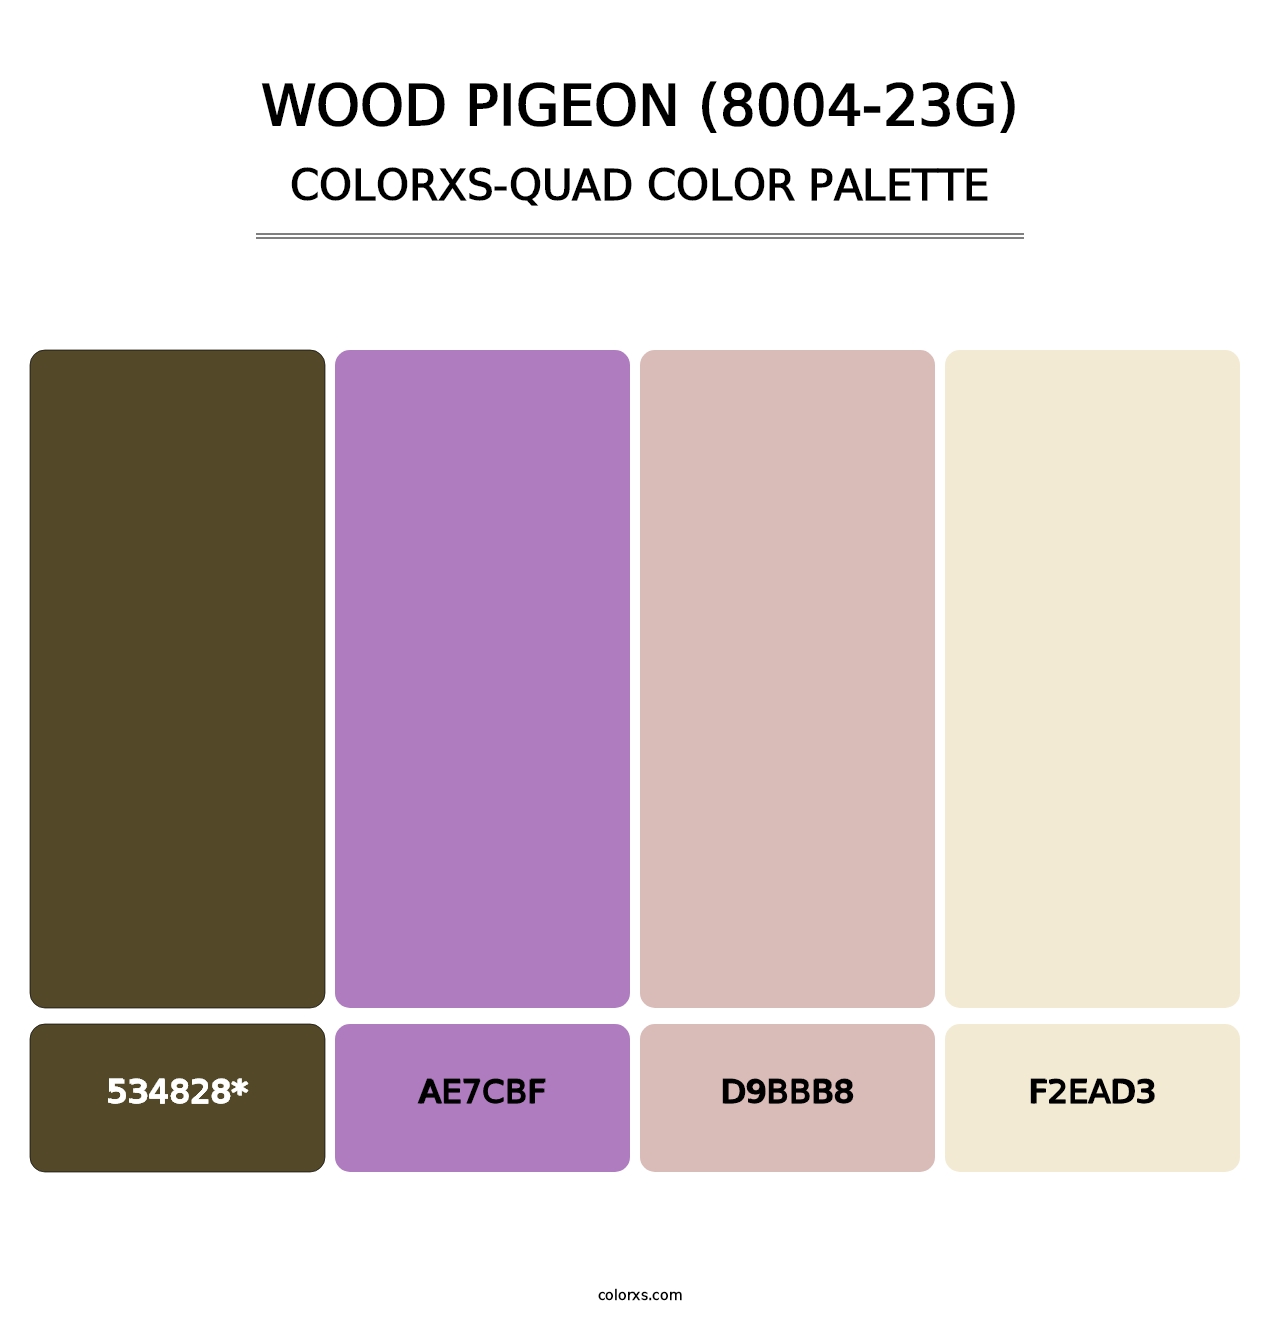 Wood Pigeon (8004-23G) - Colorxs Quad Palette